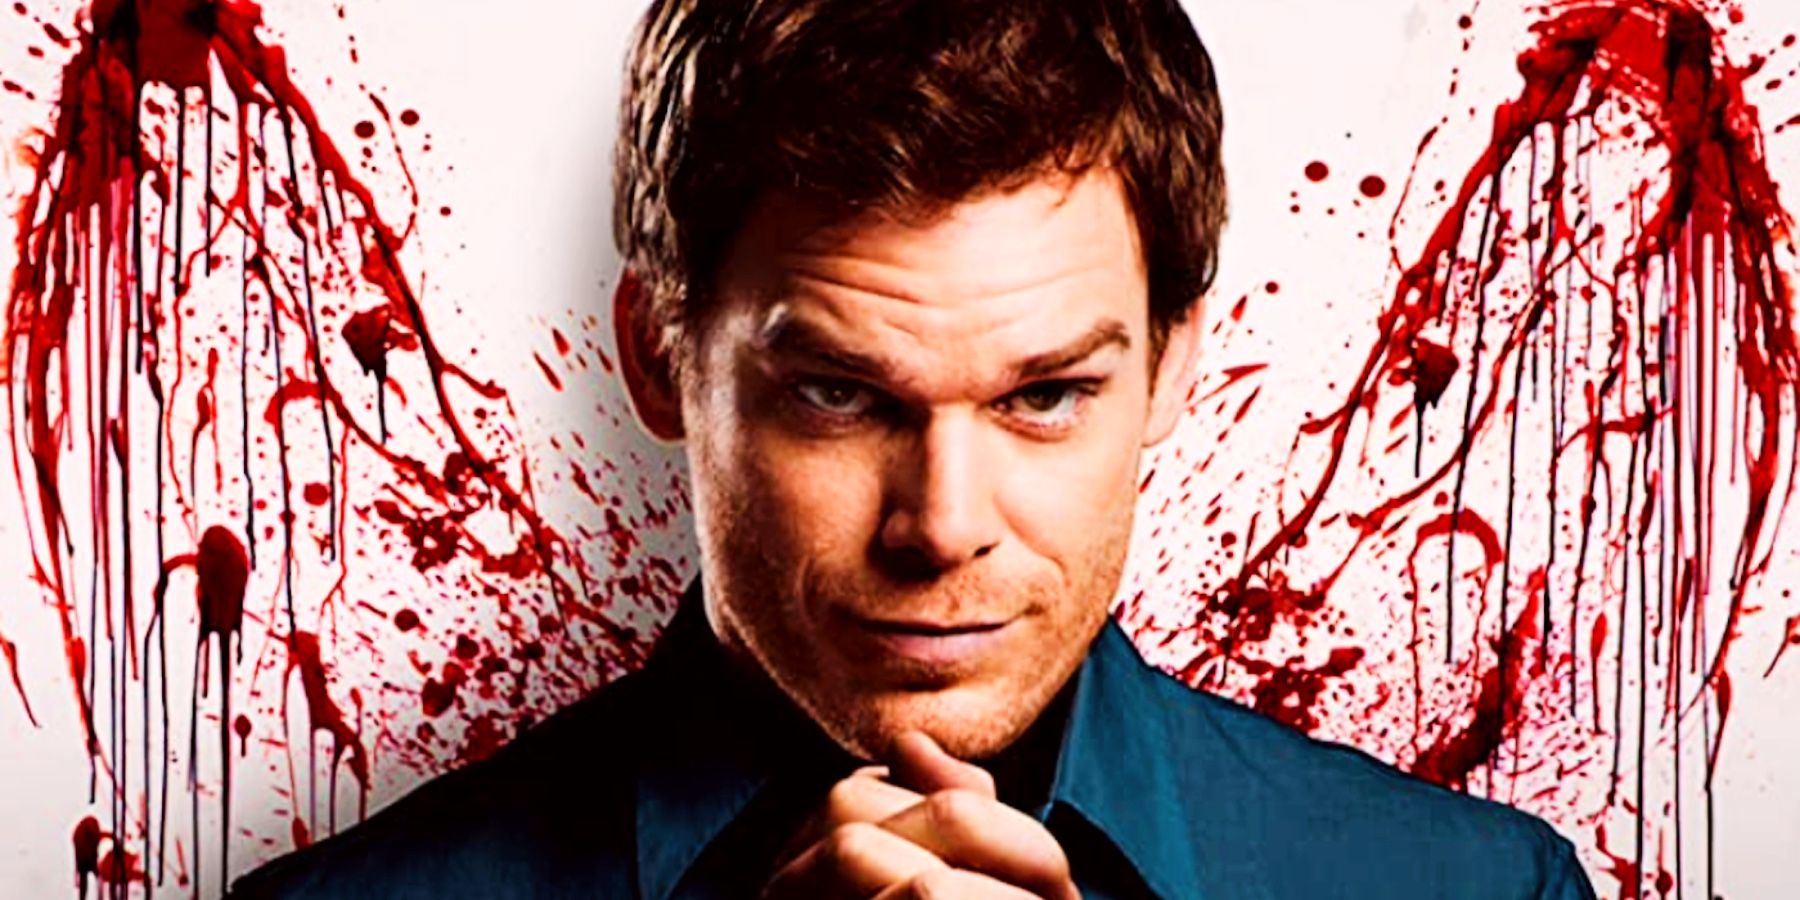 ¿Cuántas personas mató Dexter Morgan?